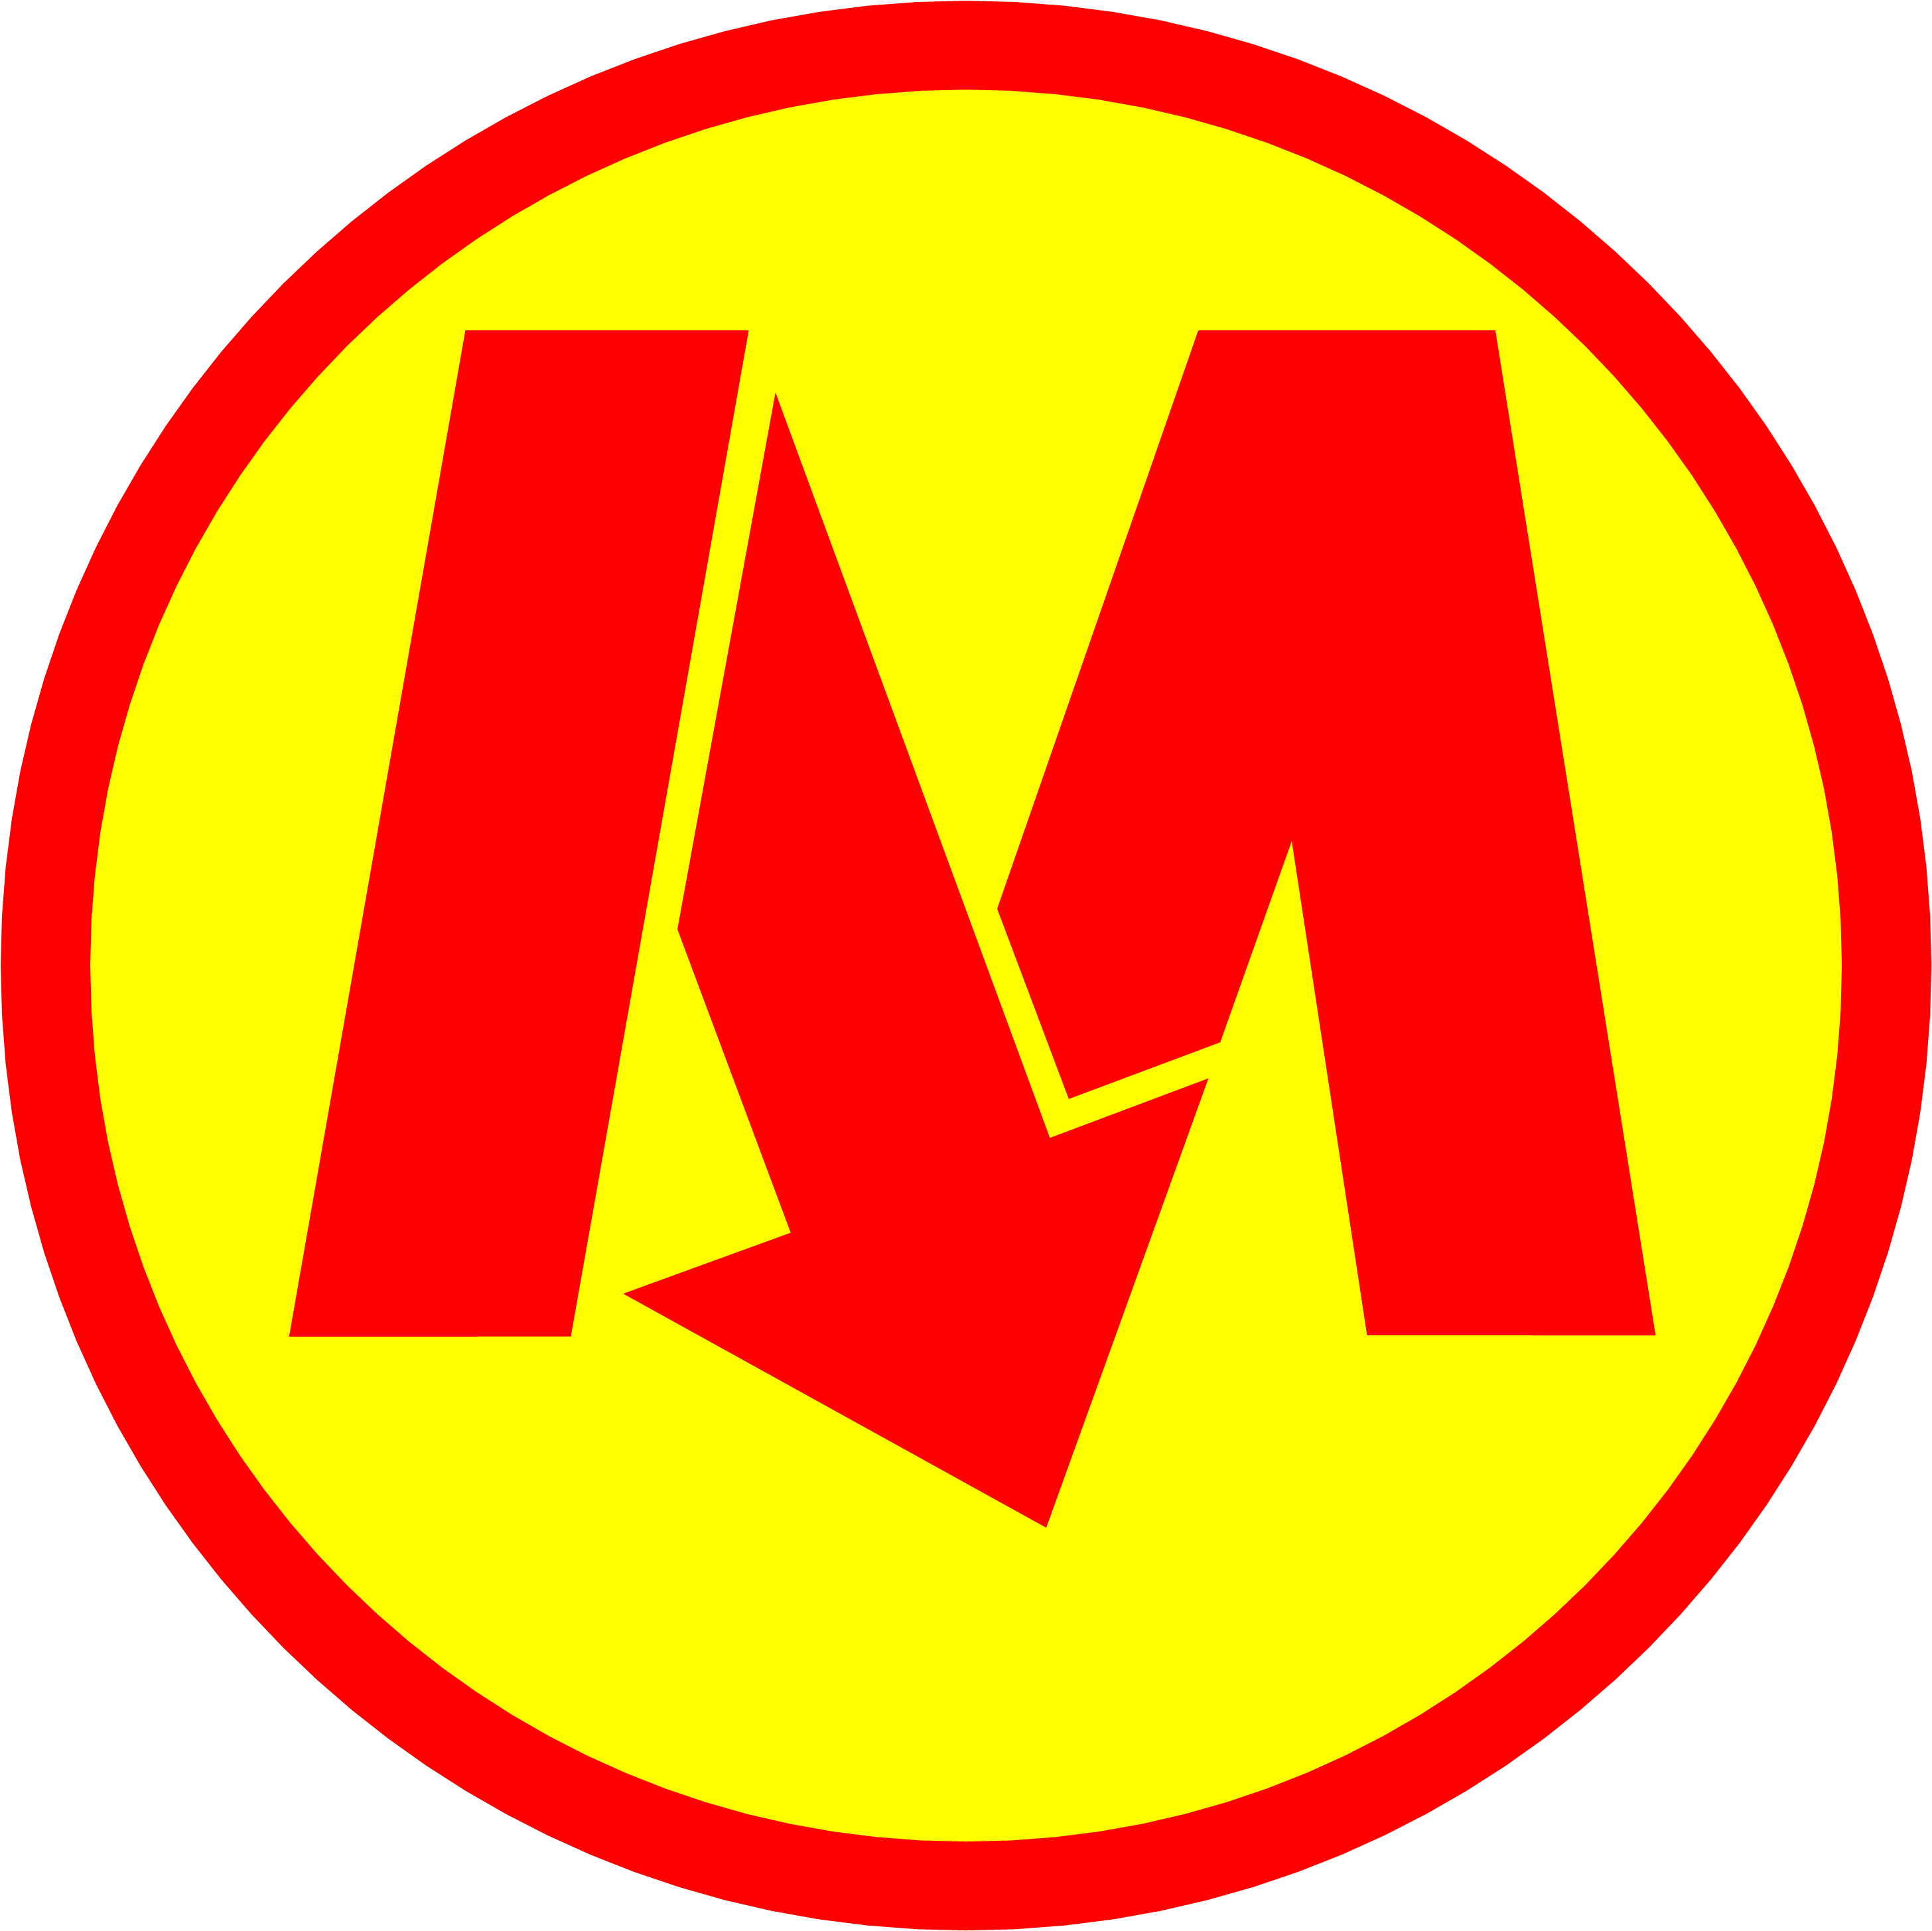 Metro Warszawskie Logo photo - 1